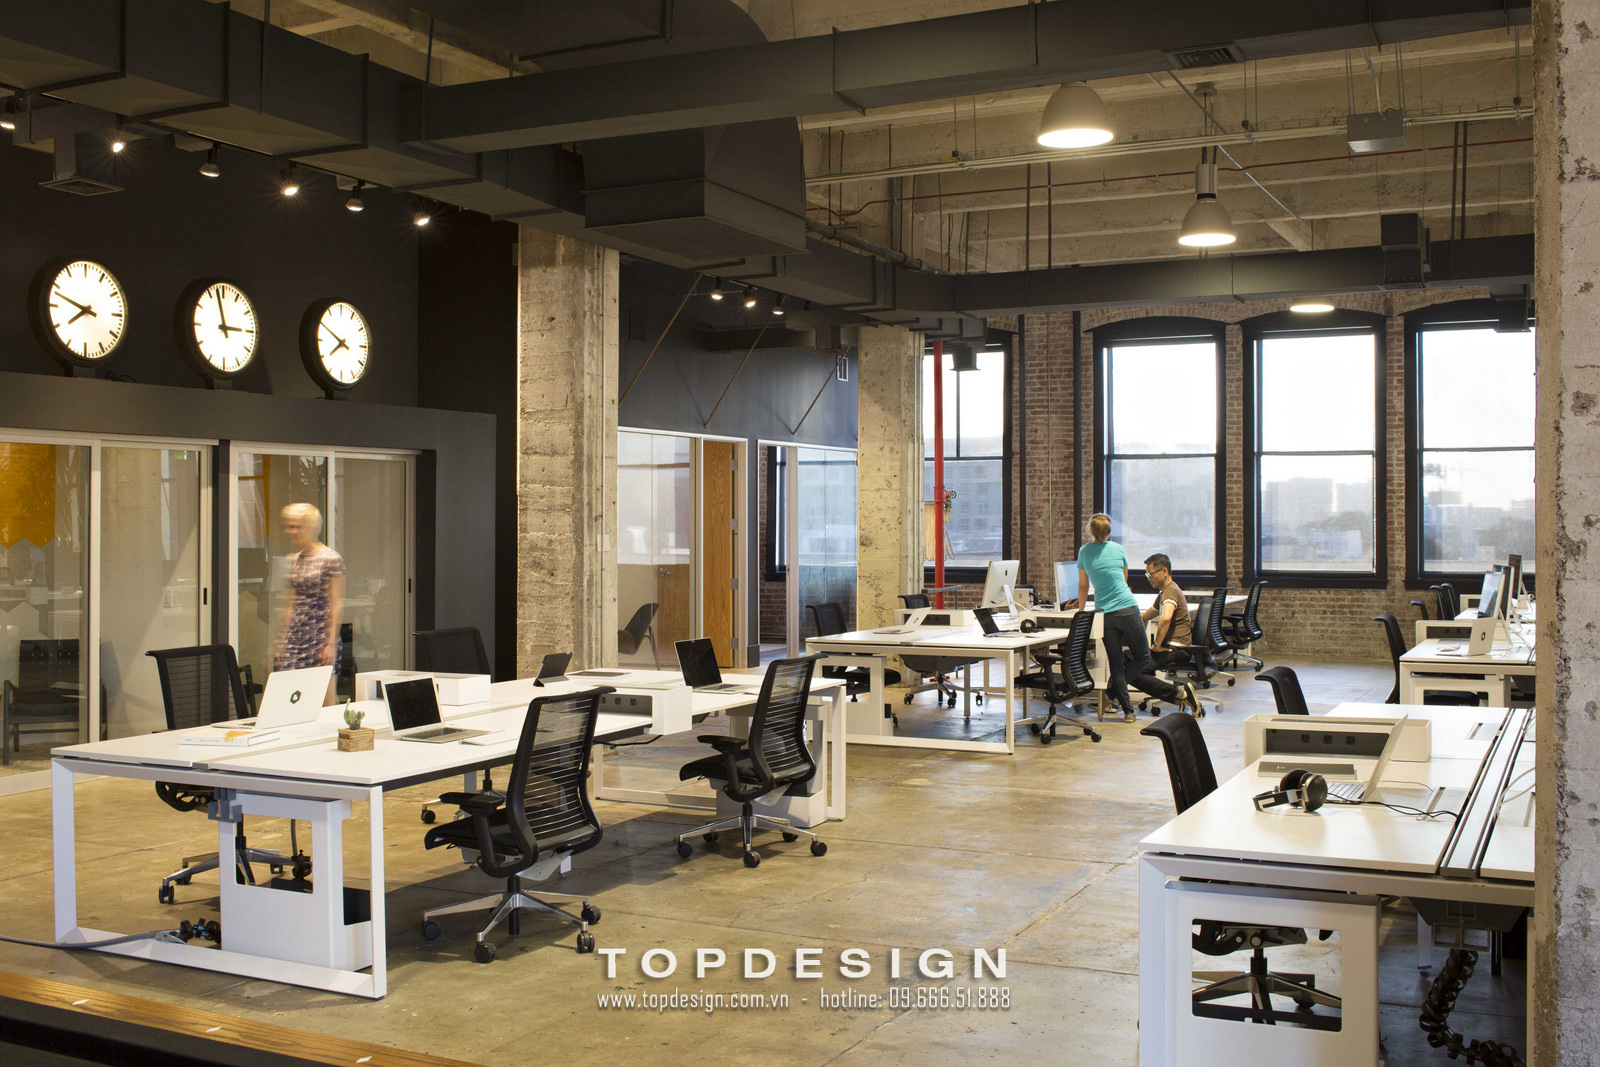 7.Thiết kế văn phòng nhà máy tối giản, hiện đại_TOPDESIGN